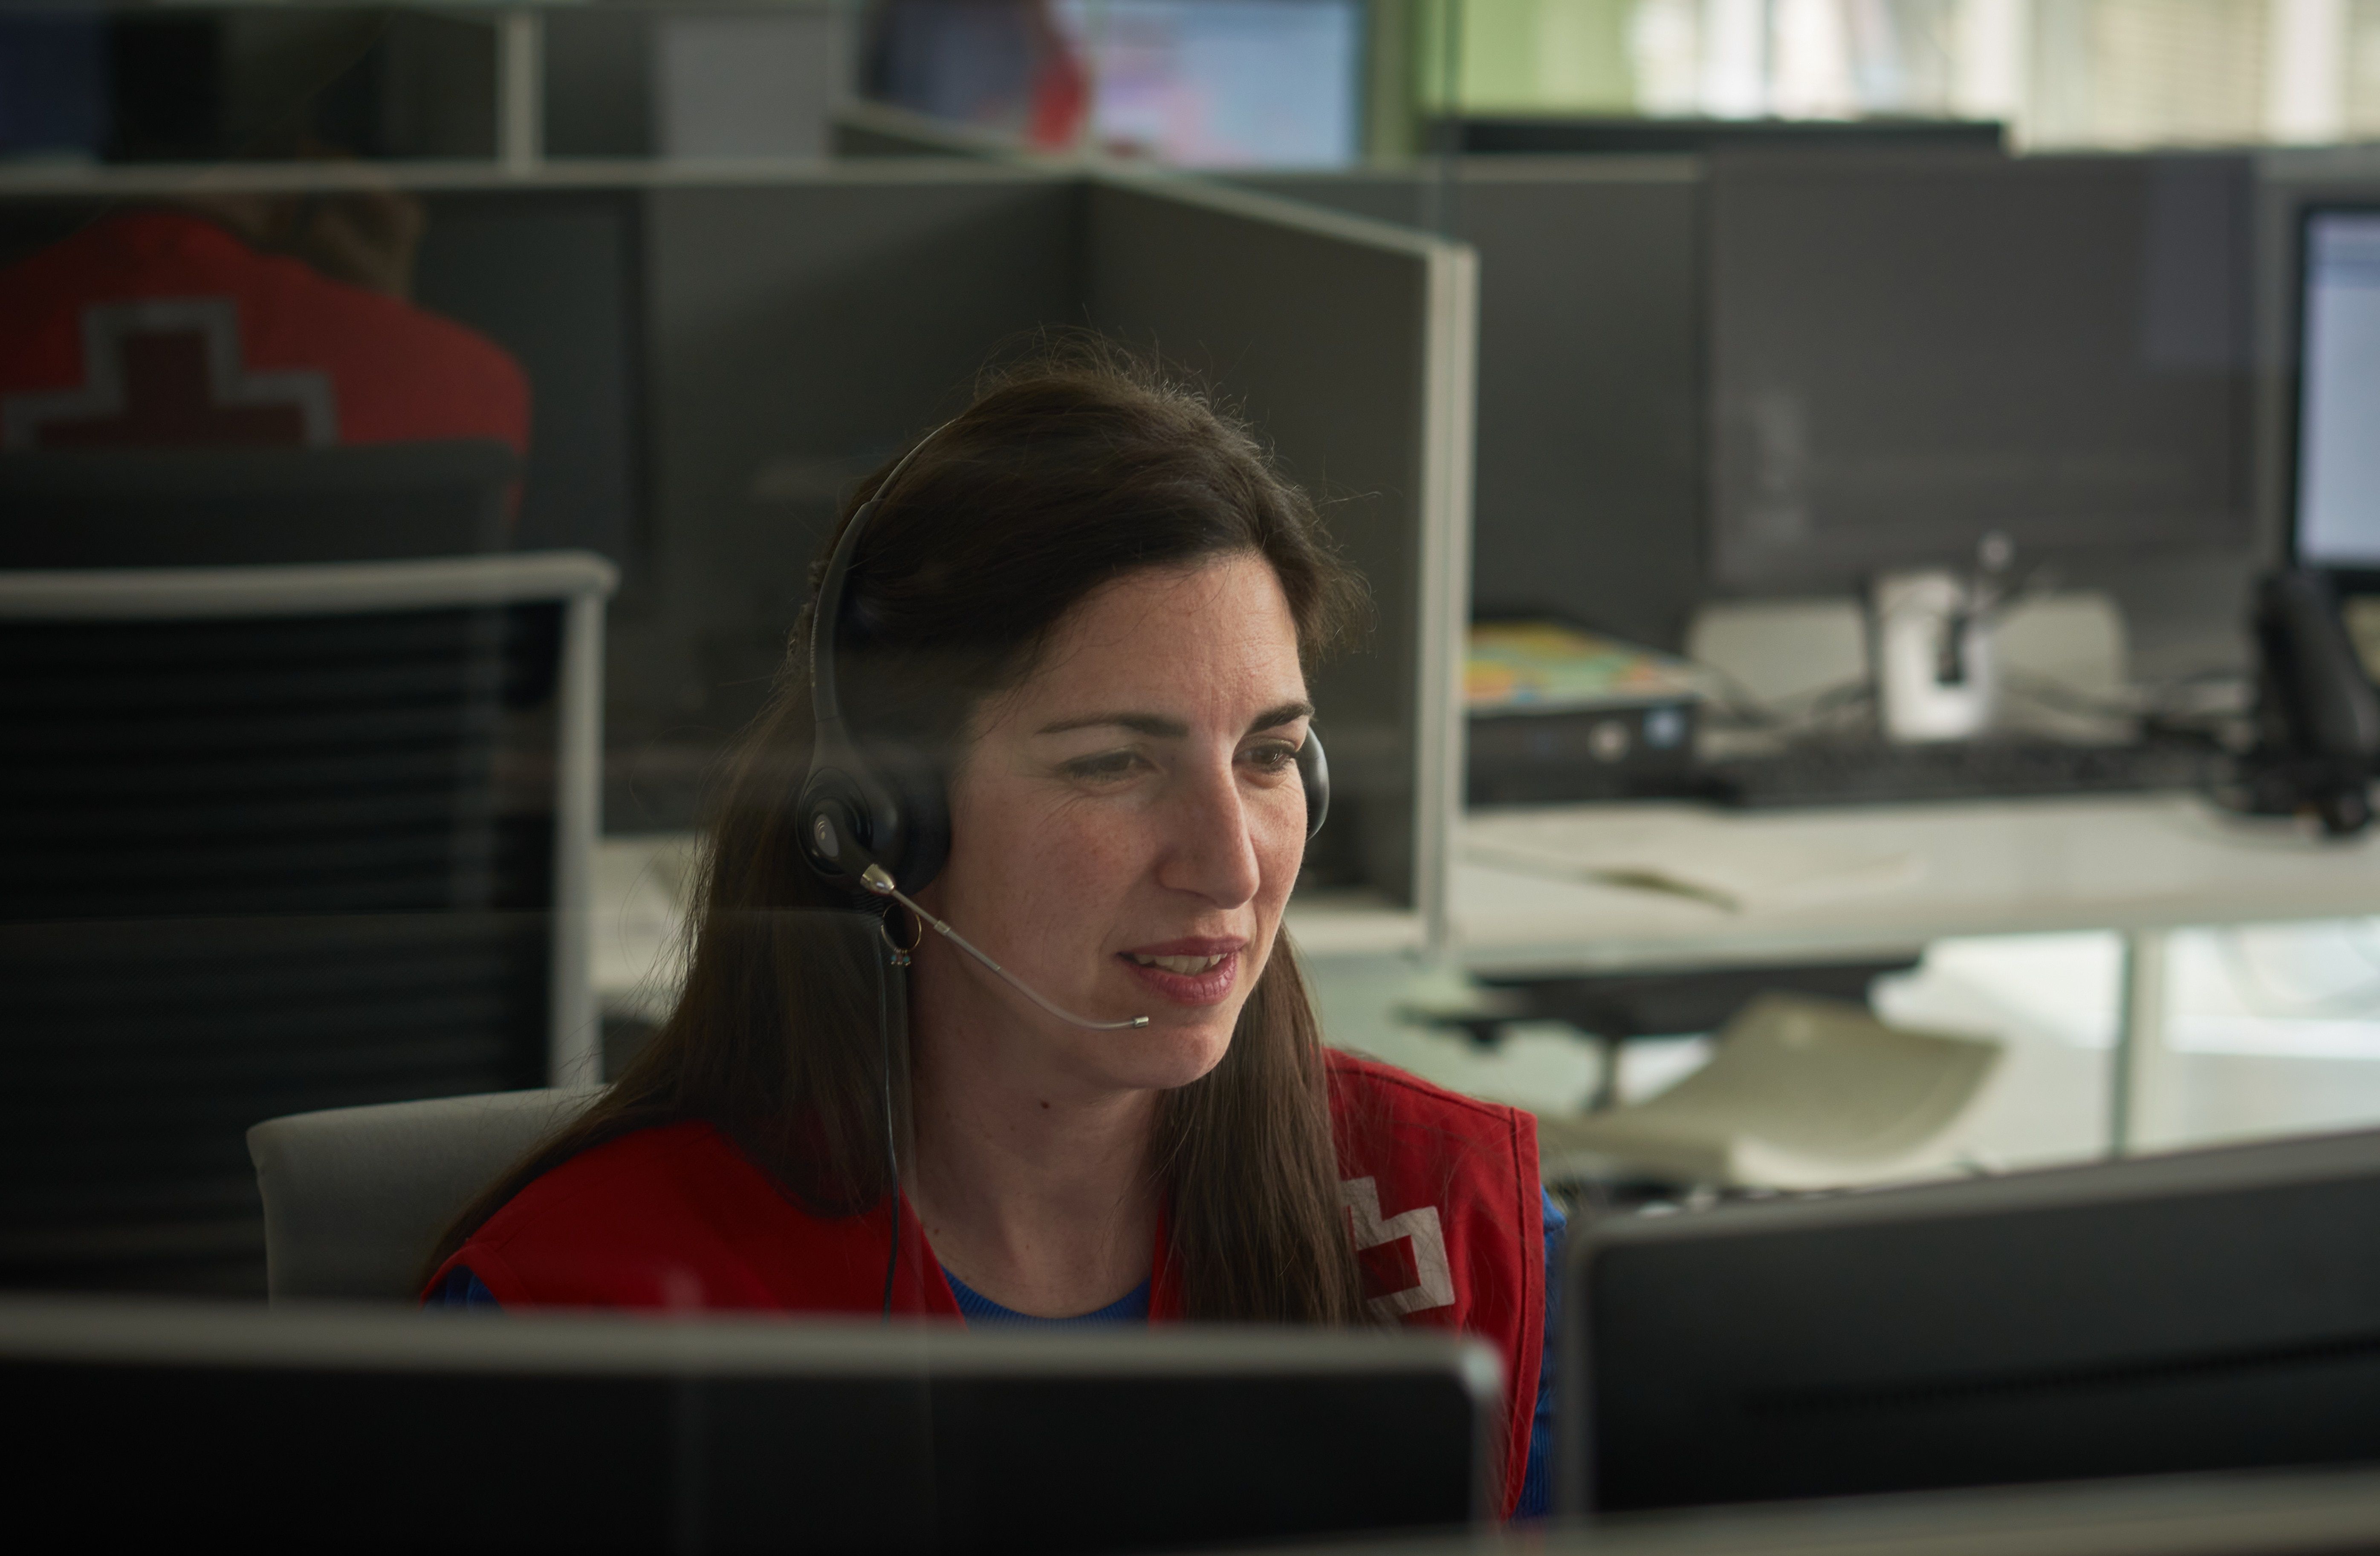 El 68% de las llamadas al servicio de apoyo psicosocial de Cruz Roja en la crisis son de mujeres. Foto: Europa Press 